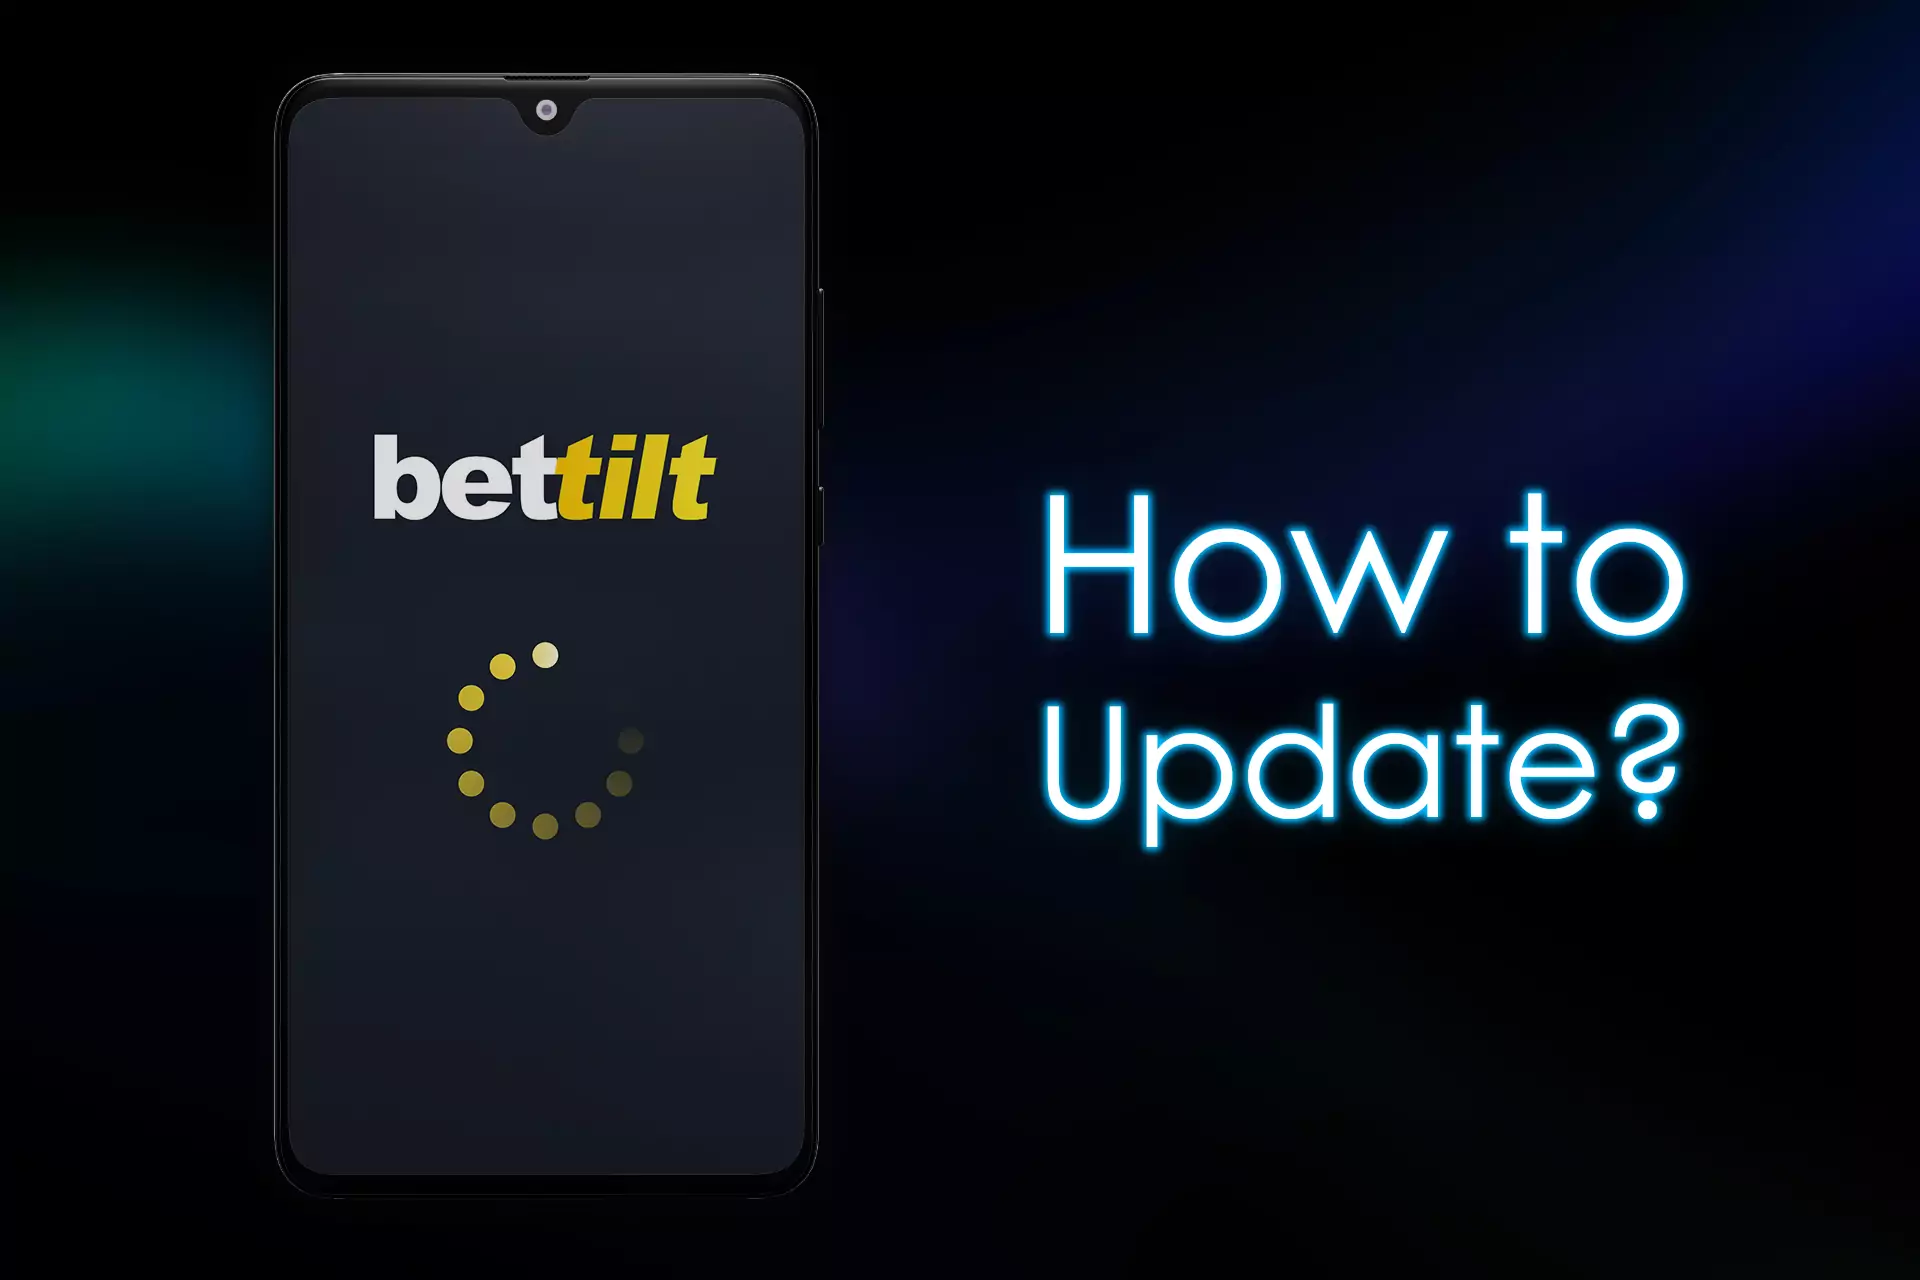 Bettilt टीम नियमित रूप से ऐप के लिए अपडेट जारी करती है जो नई सुविधाओं और क्षमताओं को जोड़ती है।